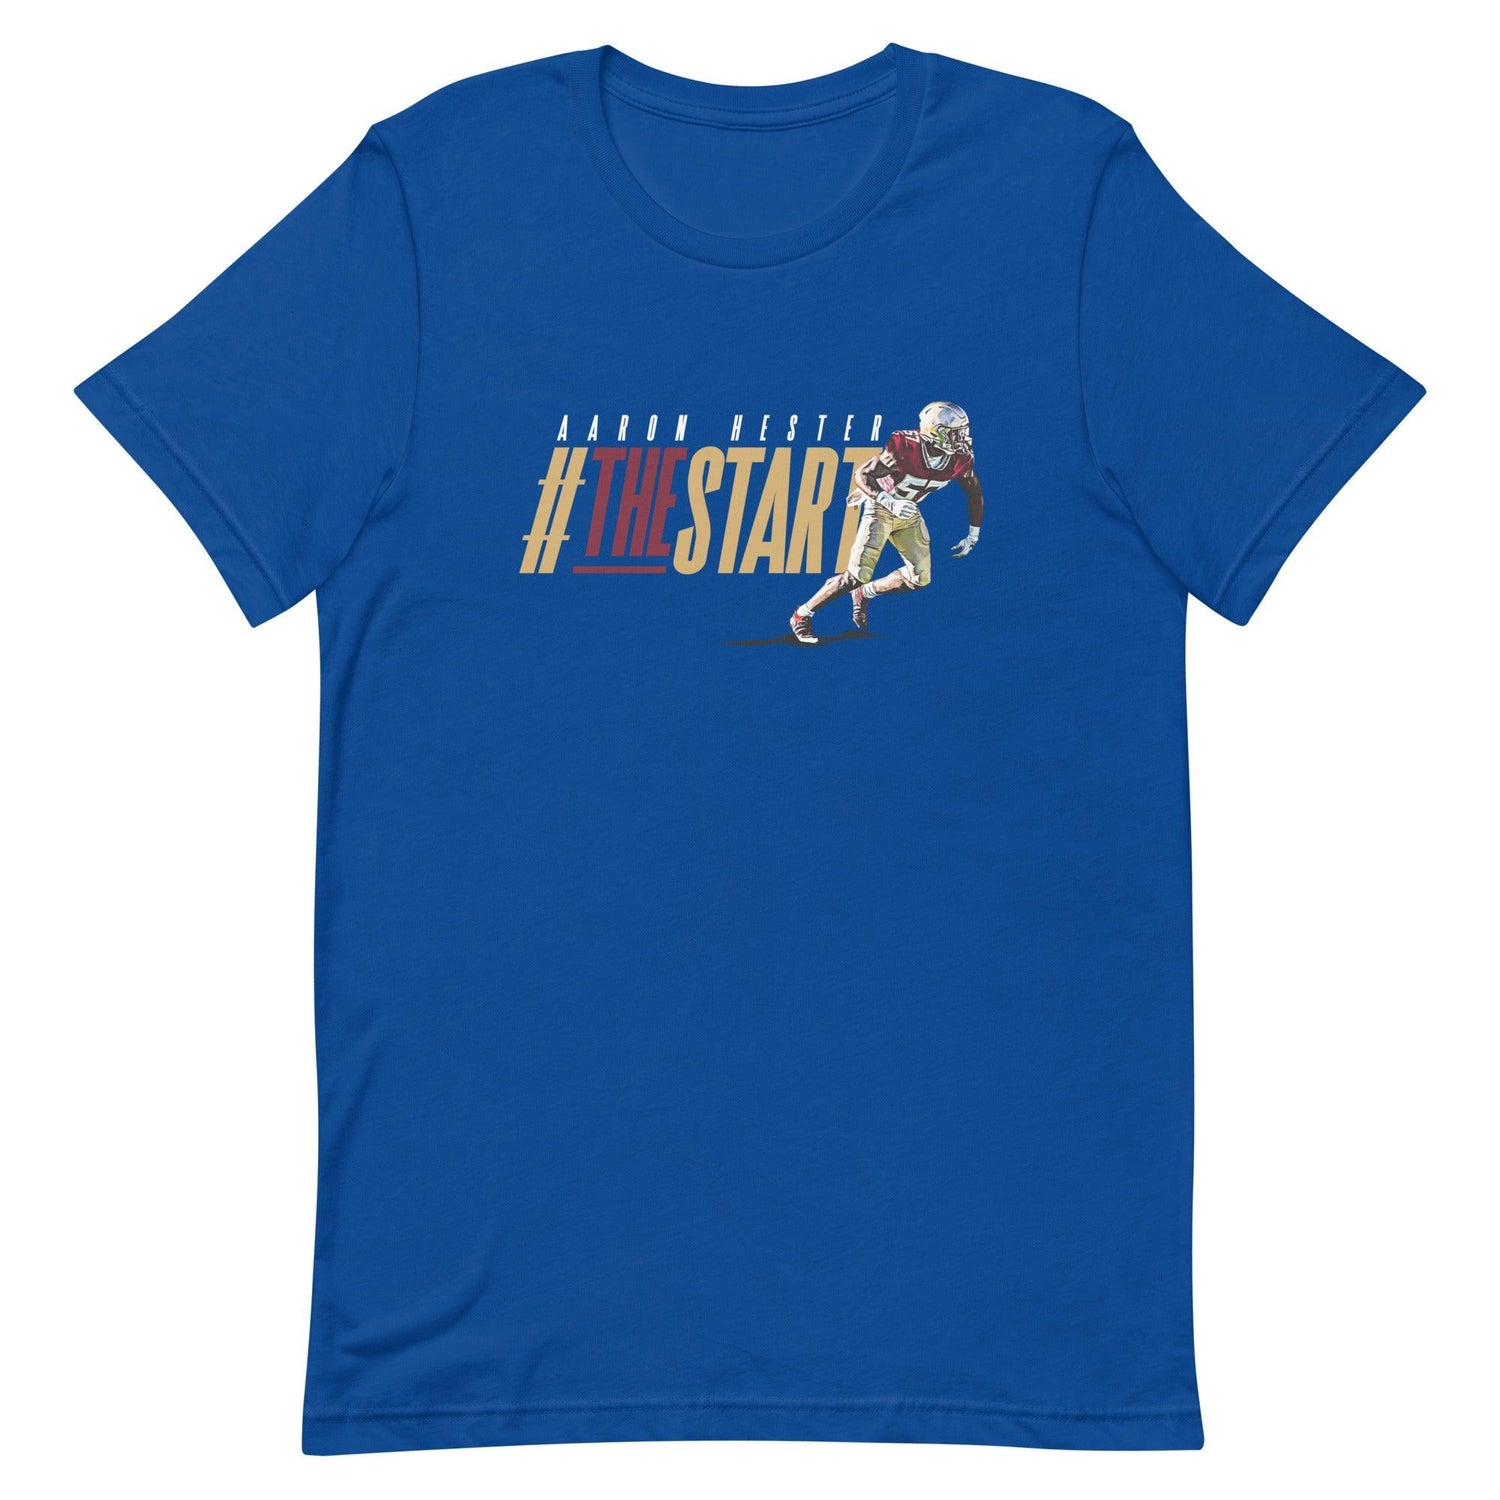 Aaron Hester "#TheStart" t-shirt - Fan Arch